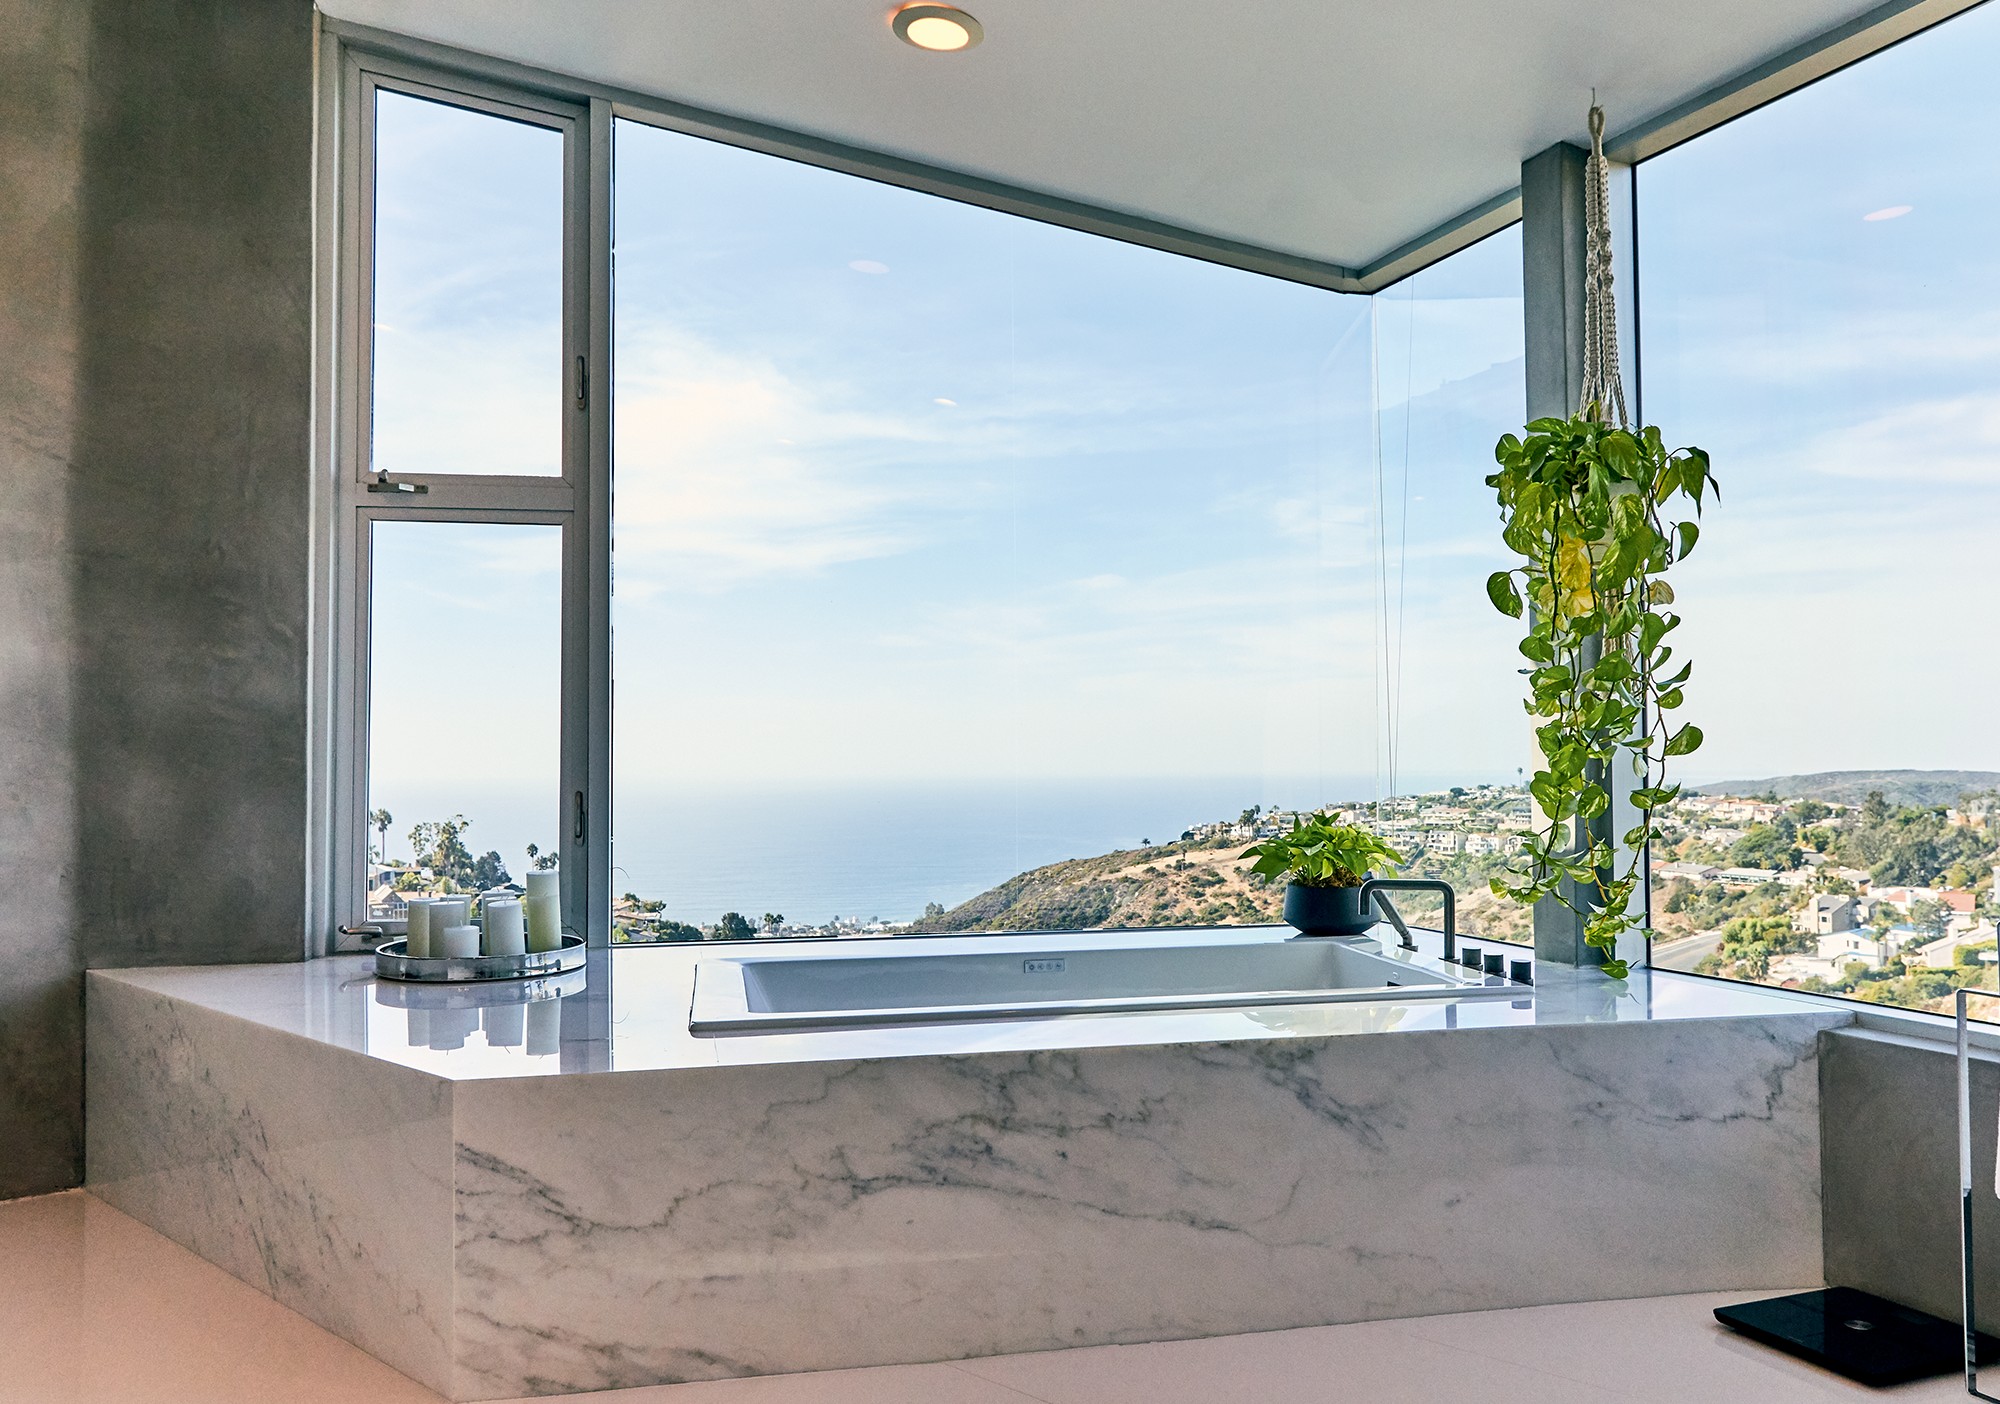 Casa de campeão: A banheira de mármore com vista para o mar. 